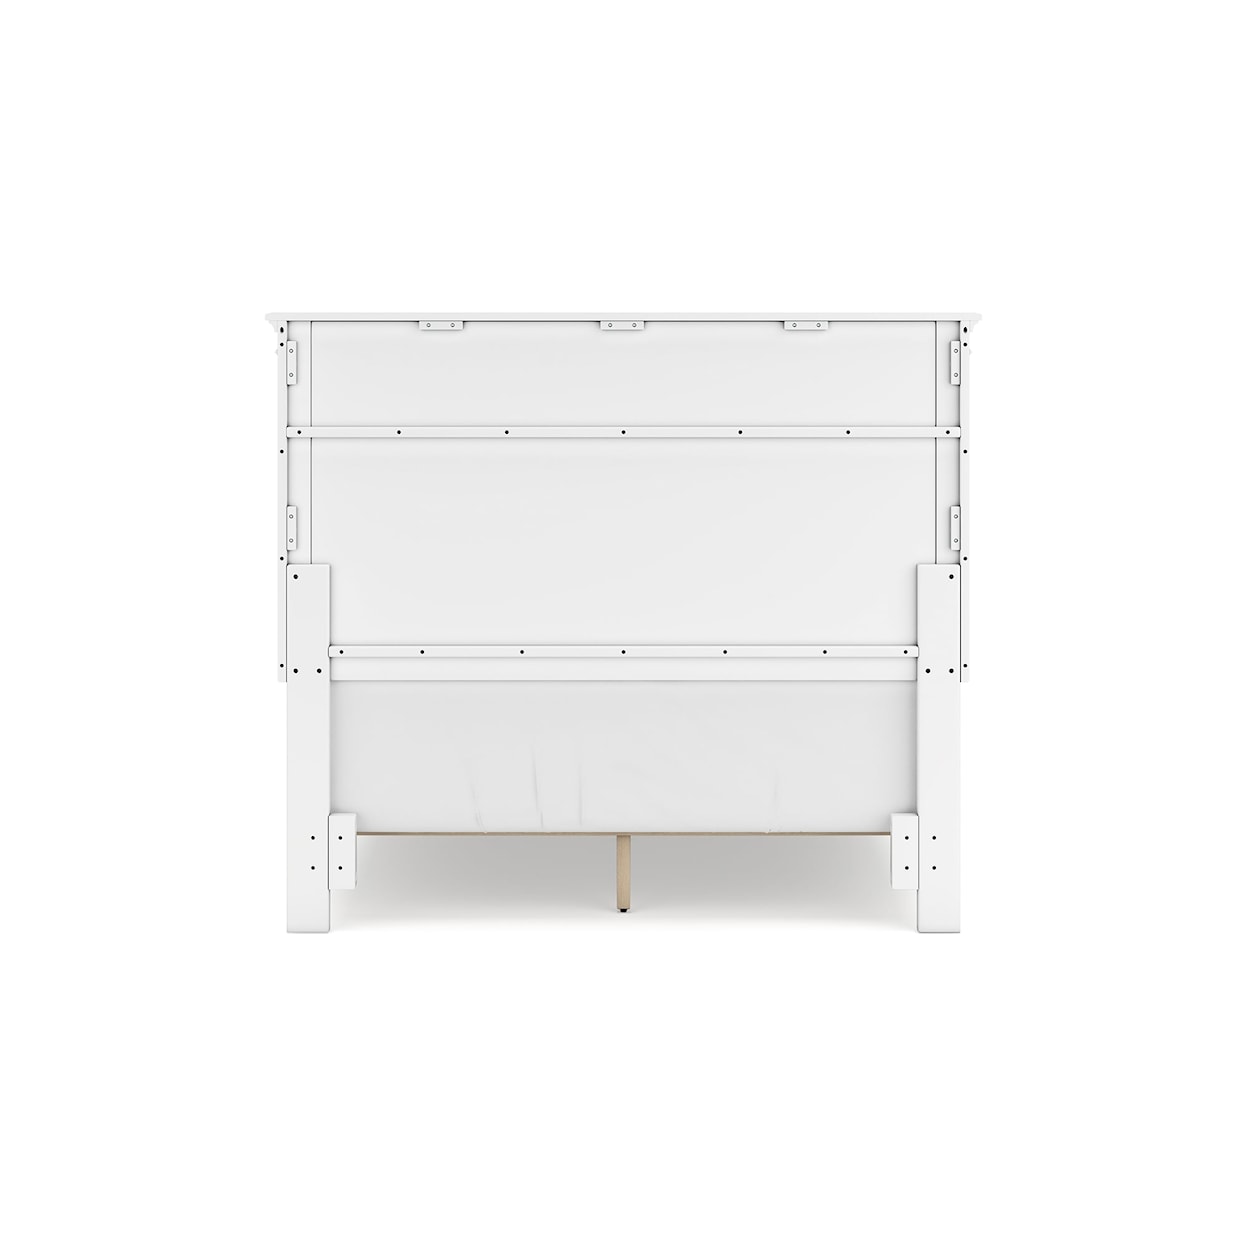 Belfort Select Park Full Panel Bed